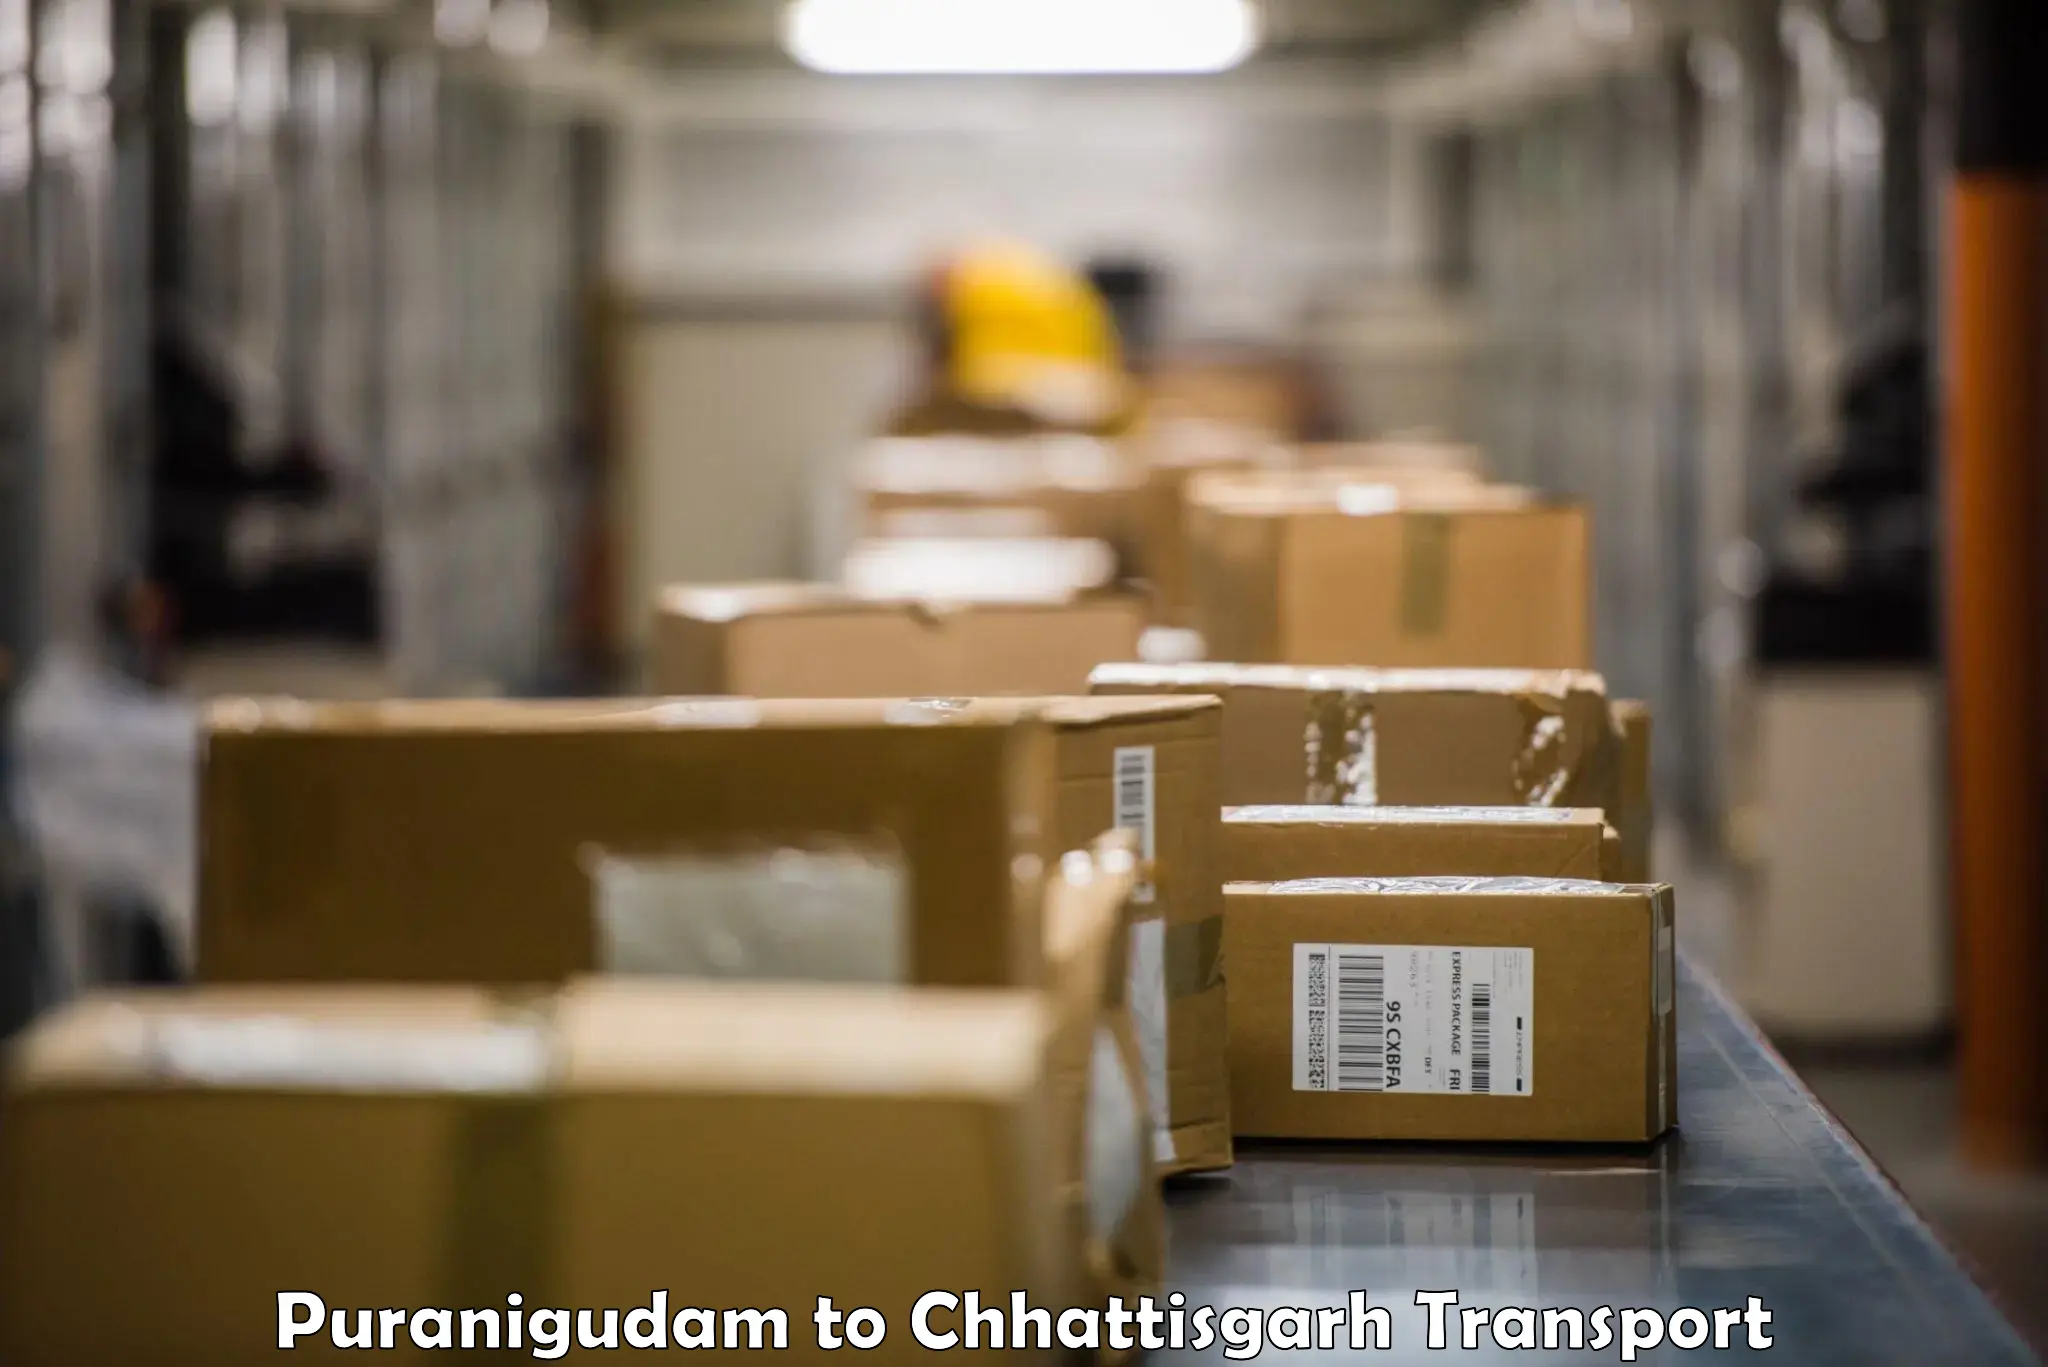 Container transport service Puranigudam to Baikunthpur